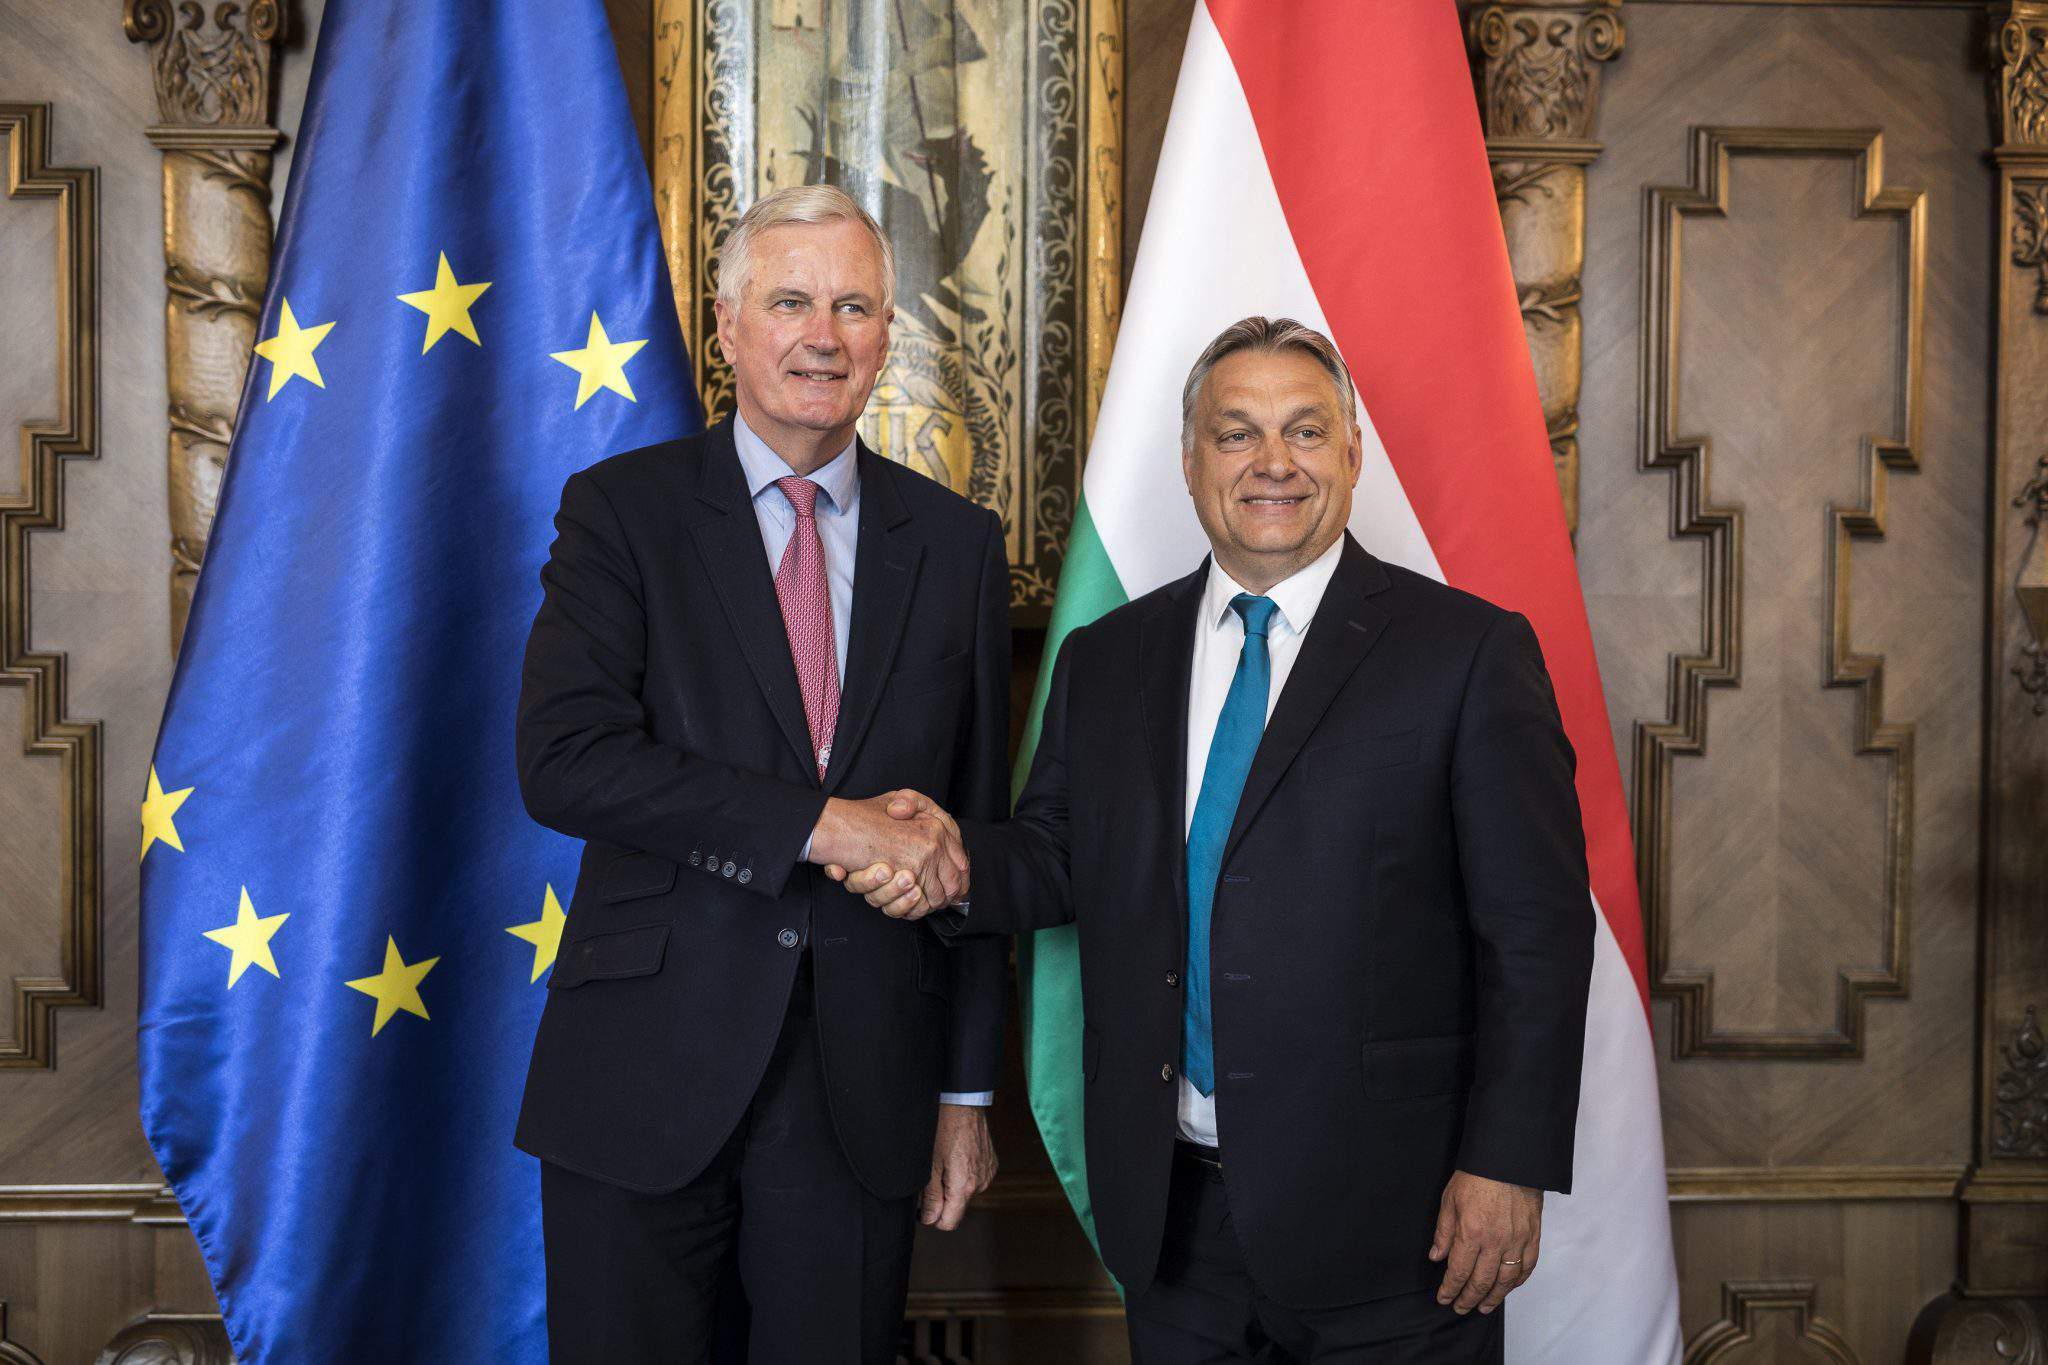 Viktor Orbán Europäische Union